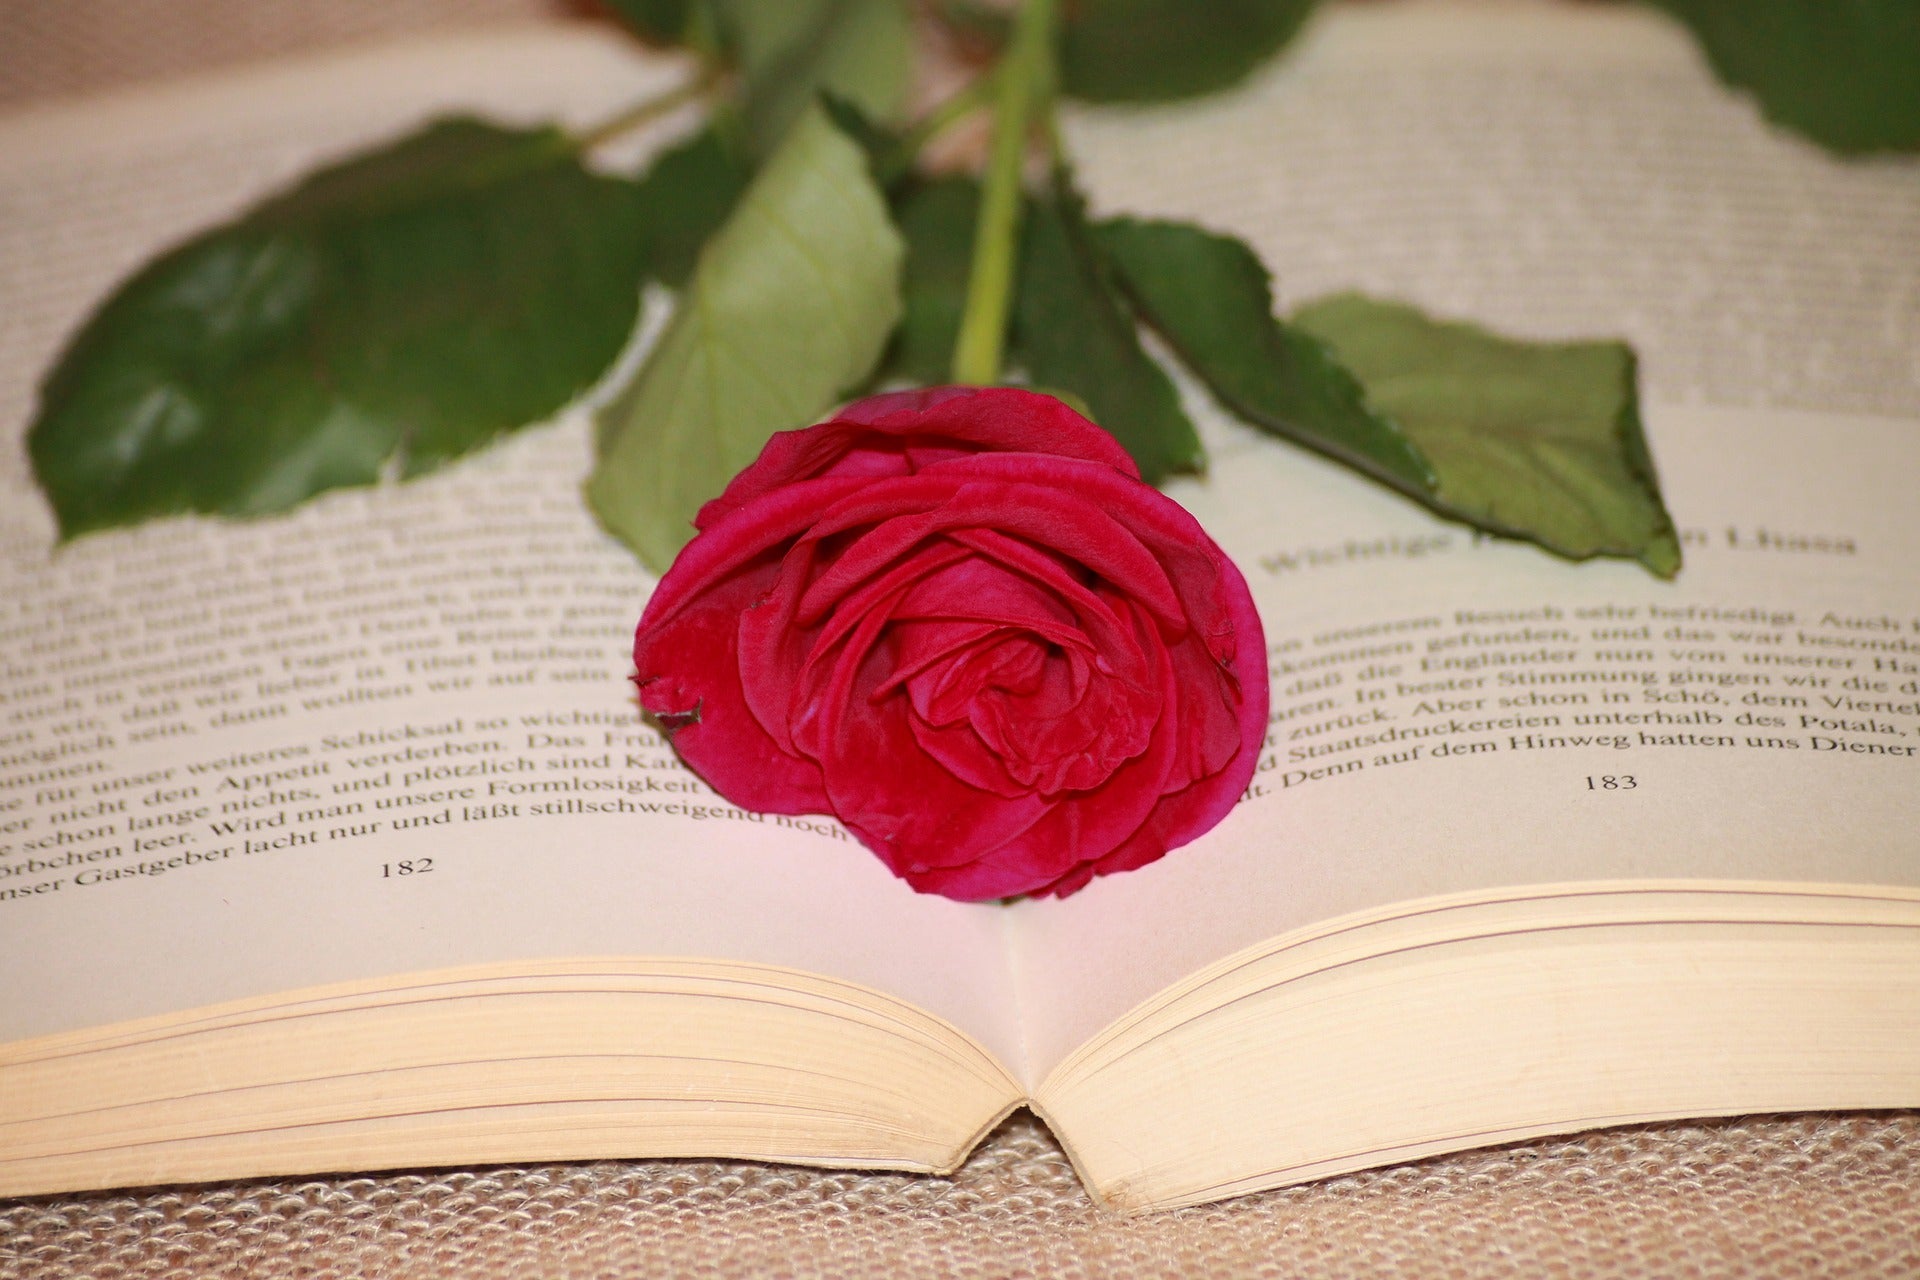 Foto de Libro y rosa. Tradición en Cataluña de regalar un libro y